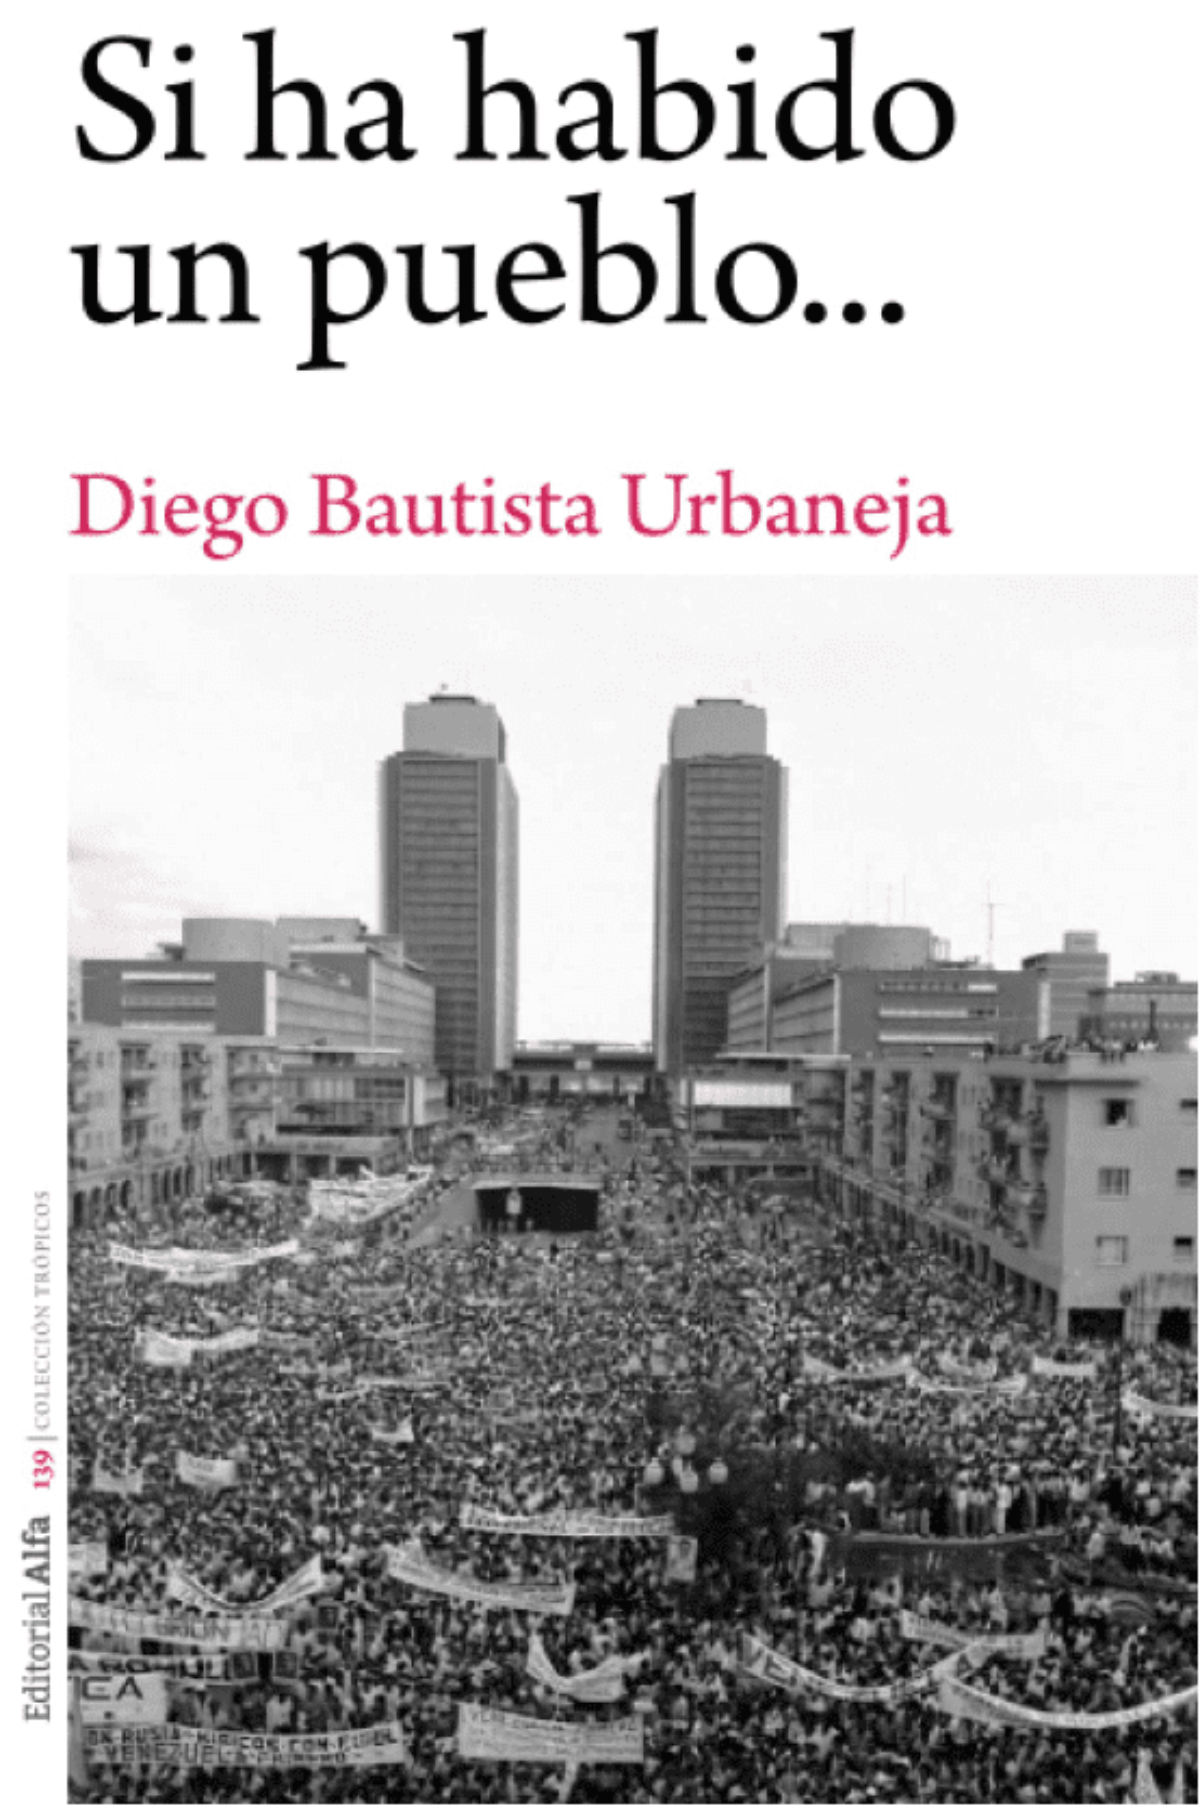 Diego Bautista Urbaneja / Si ha habido un pueblo…